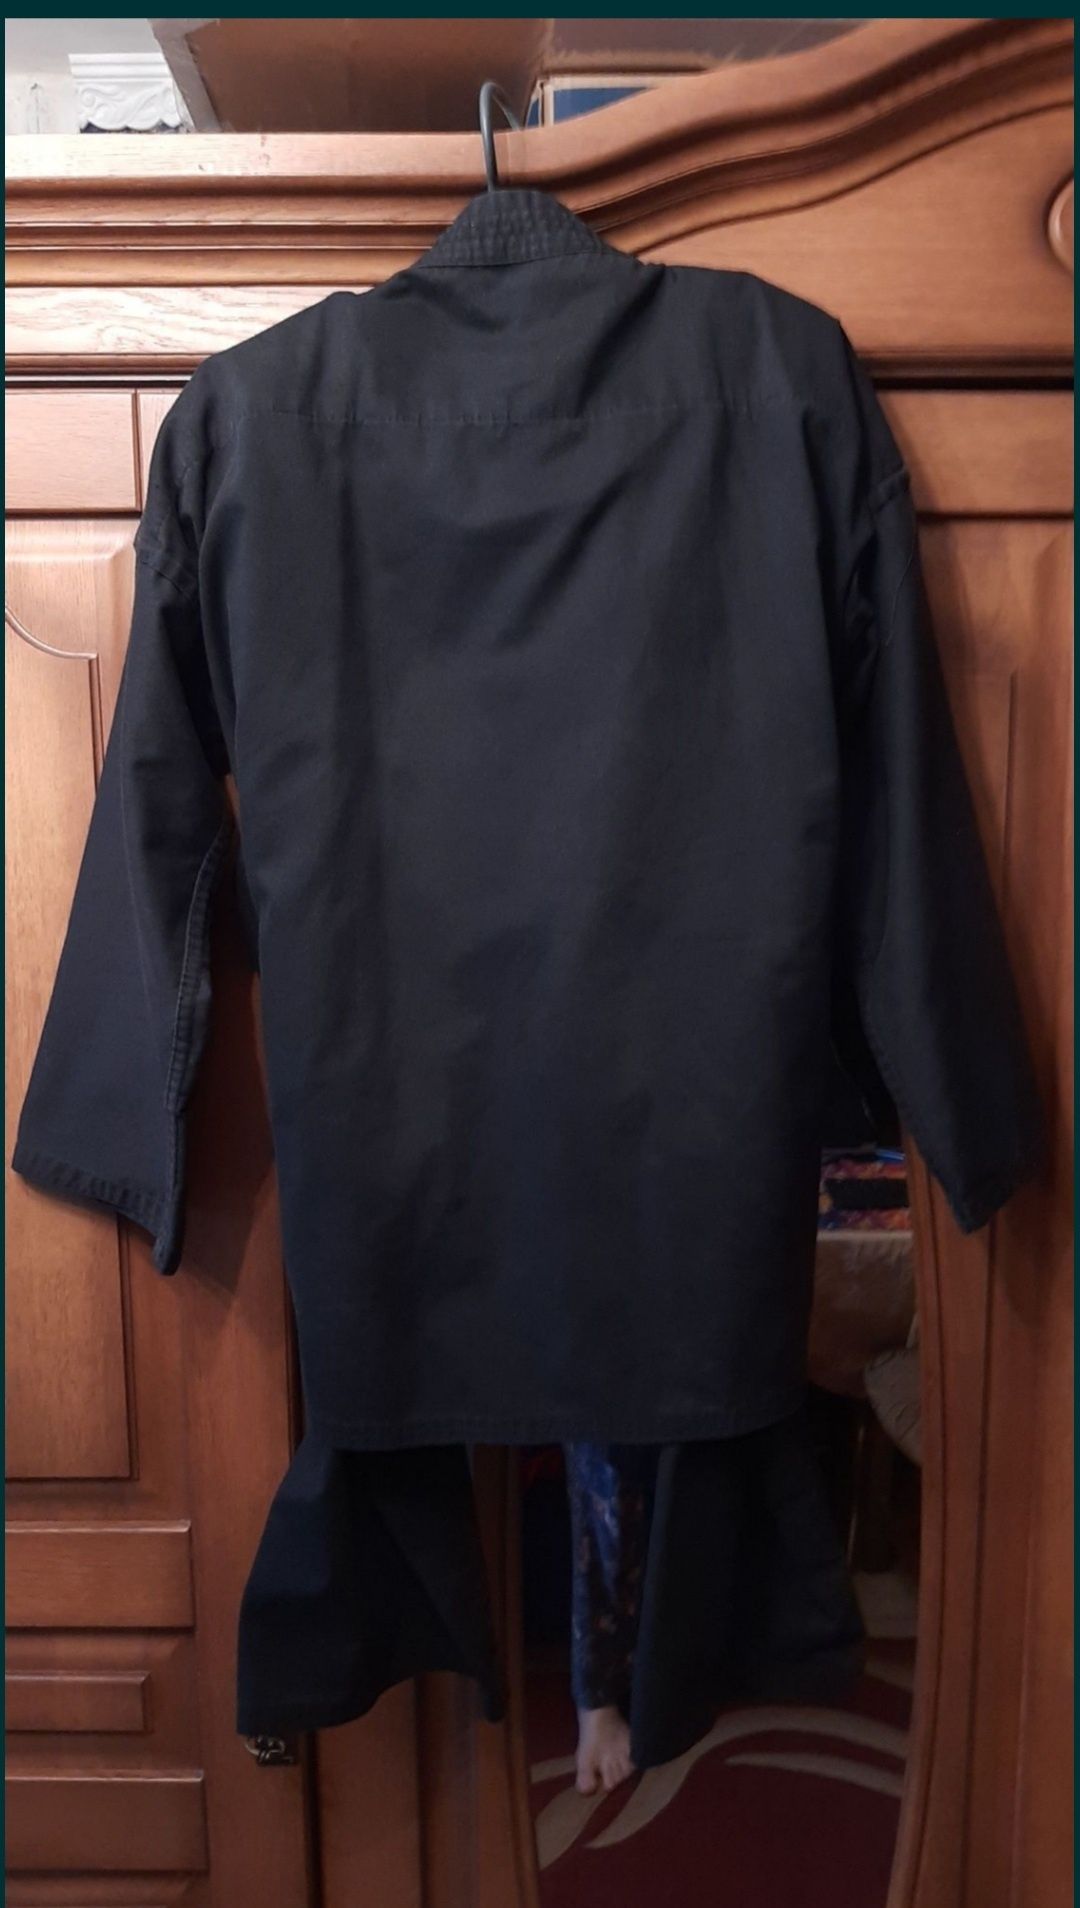 Чёрное кимоно Blitz с штанами и поясом рост 160